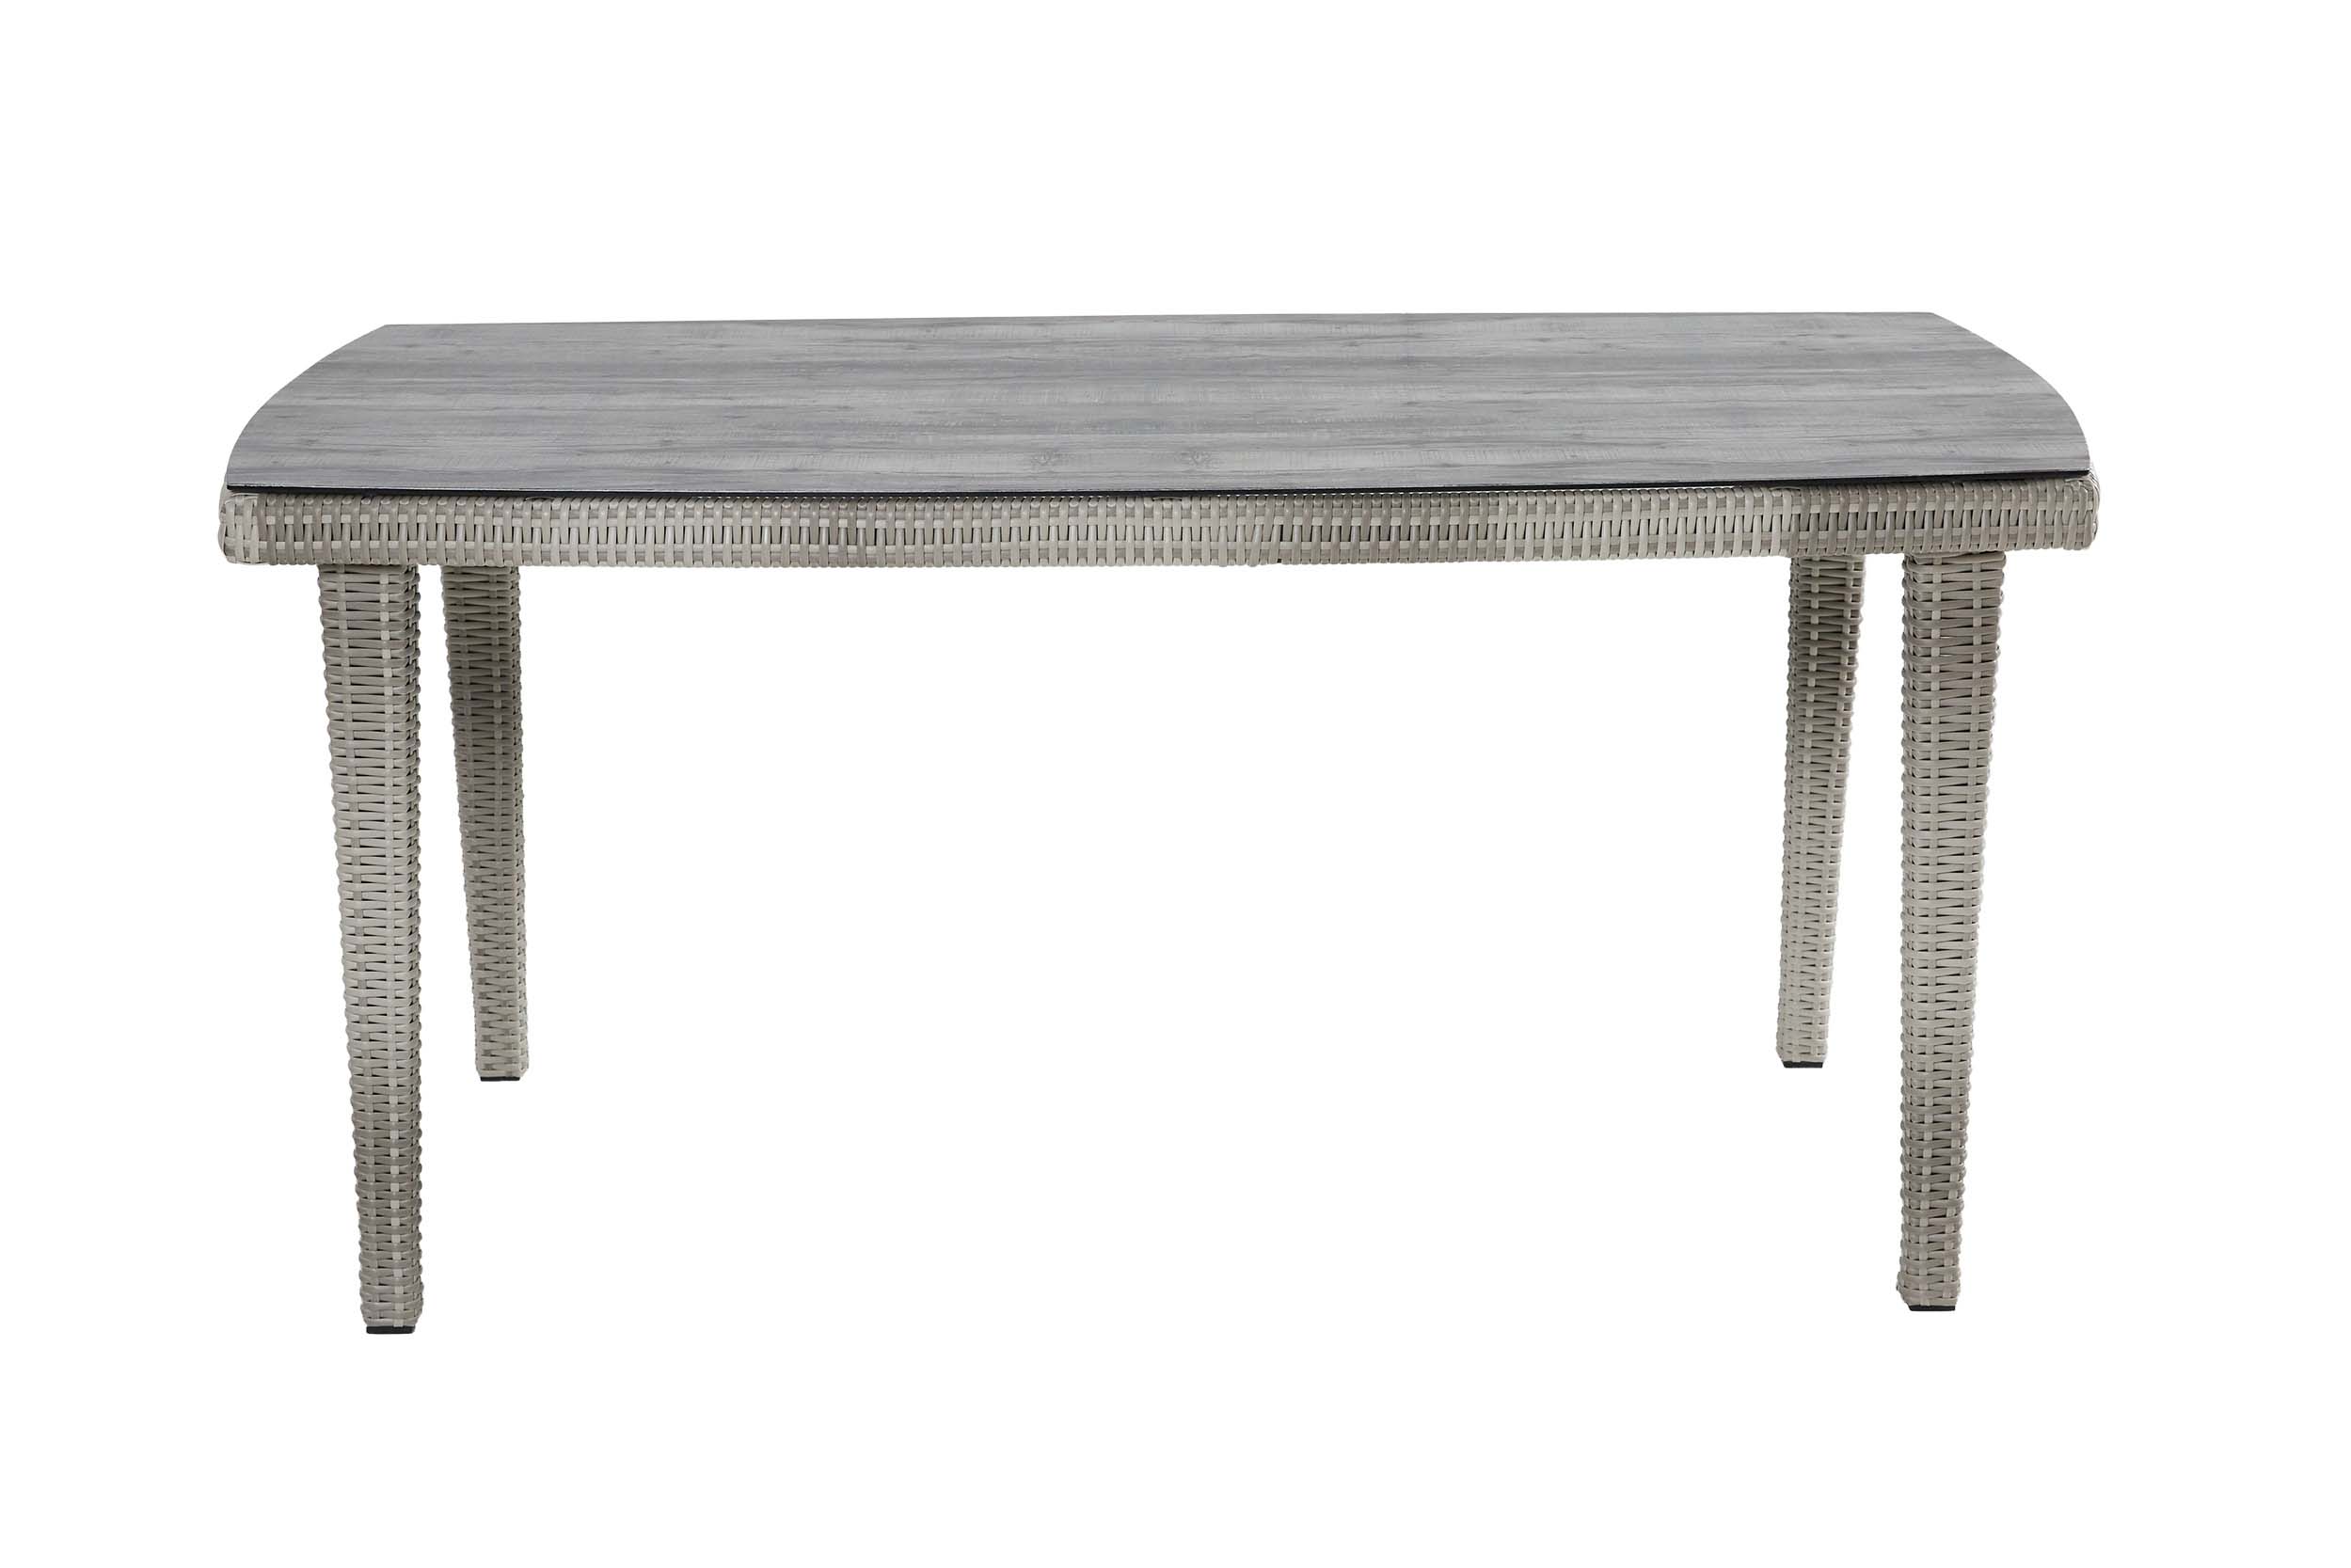 4-Tisch "Nizza" white grey,180,Glaskeramik